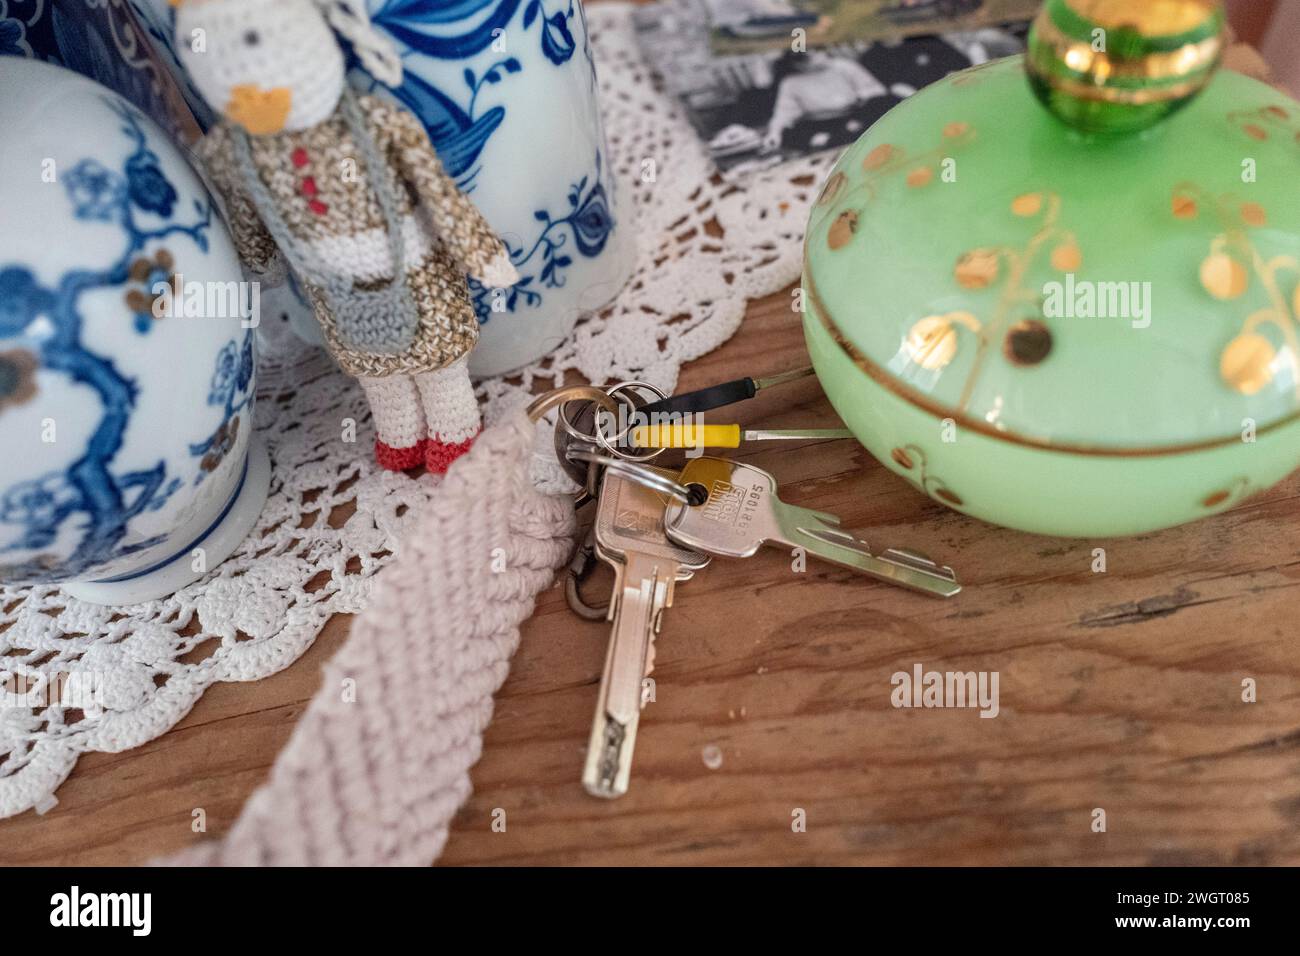 le chiavi sono rimaste su un bellissimo tavolo vecchio con ornamenti laterali Foto Stock